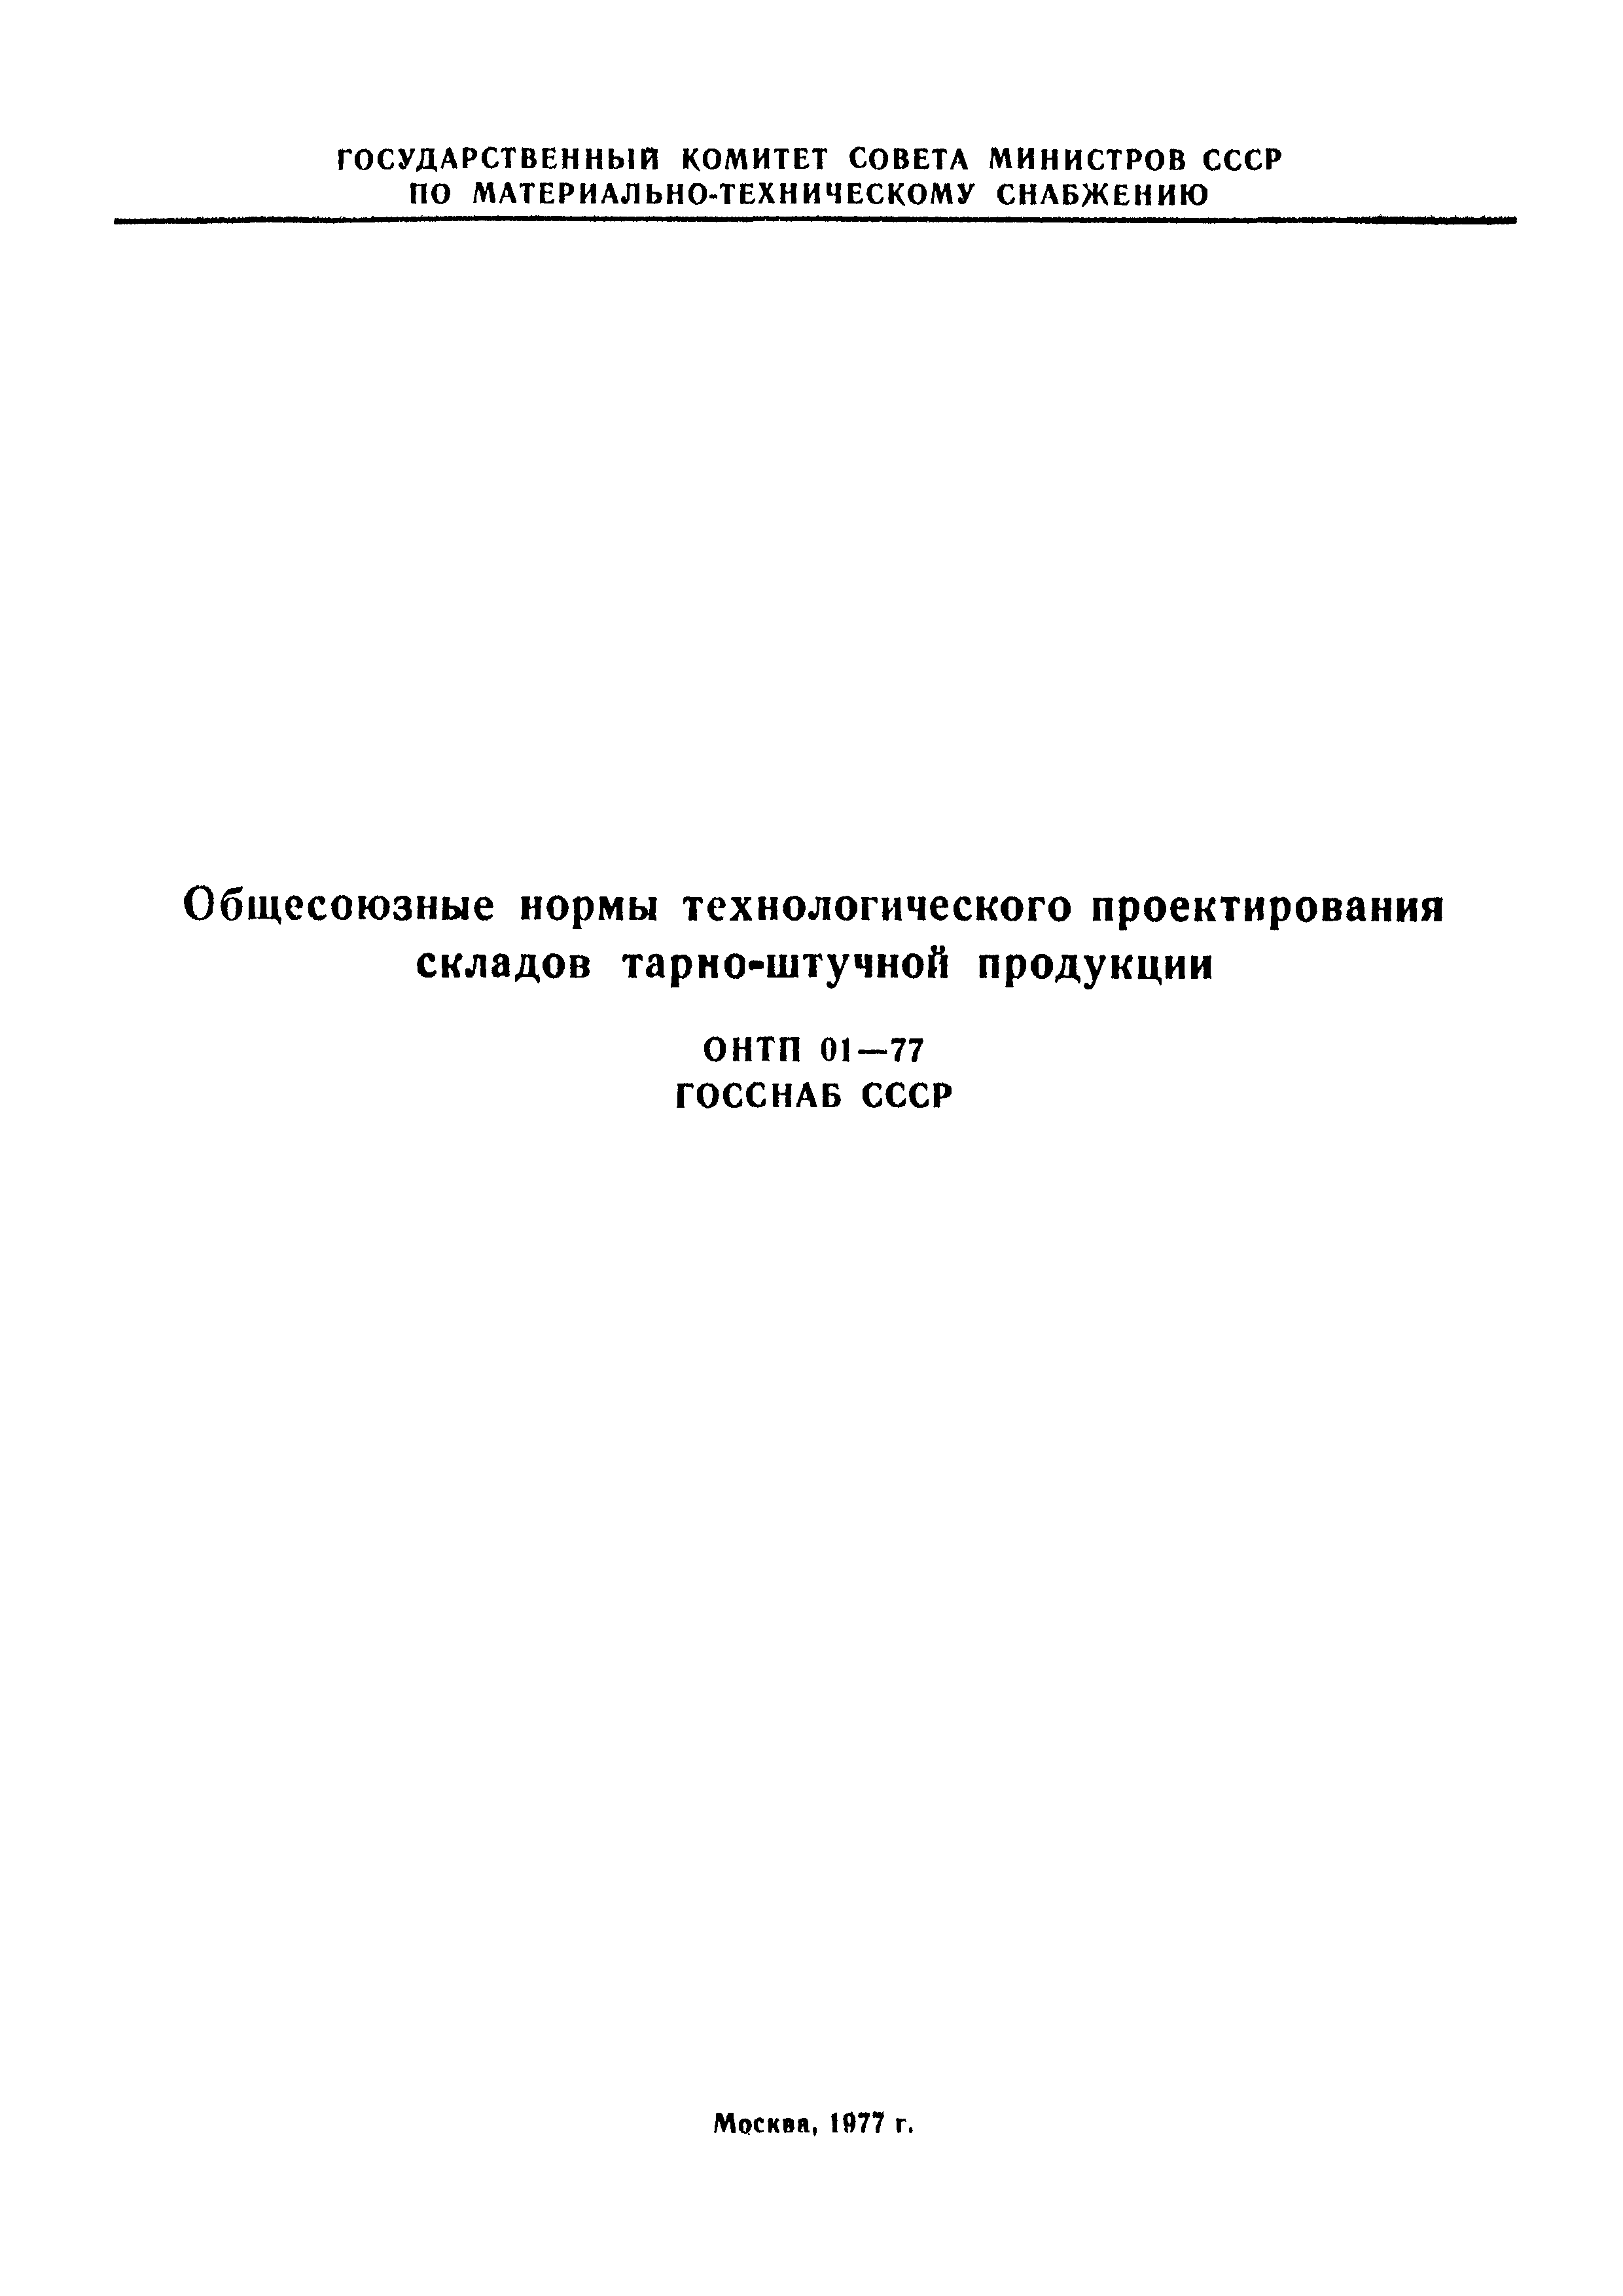 ОНТП 01-77/Госснаб СССР